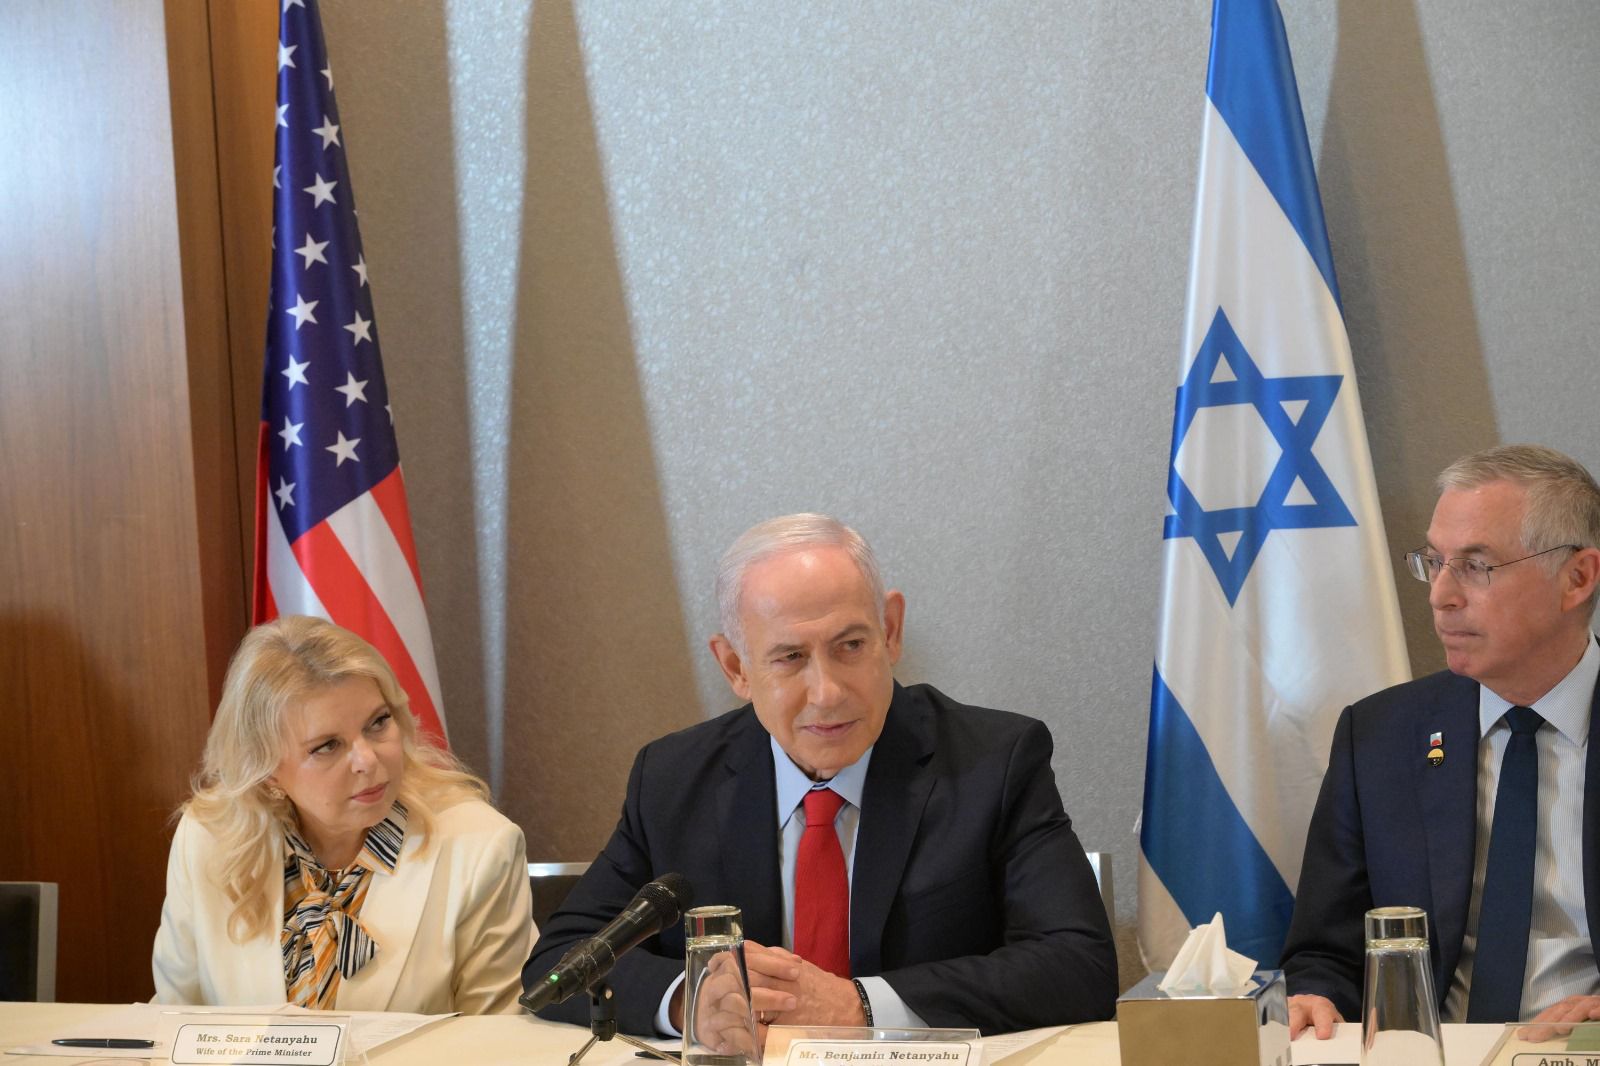 以色列總理4度赴美國國會演講 面臨民主黨議員抵制